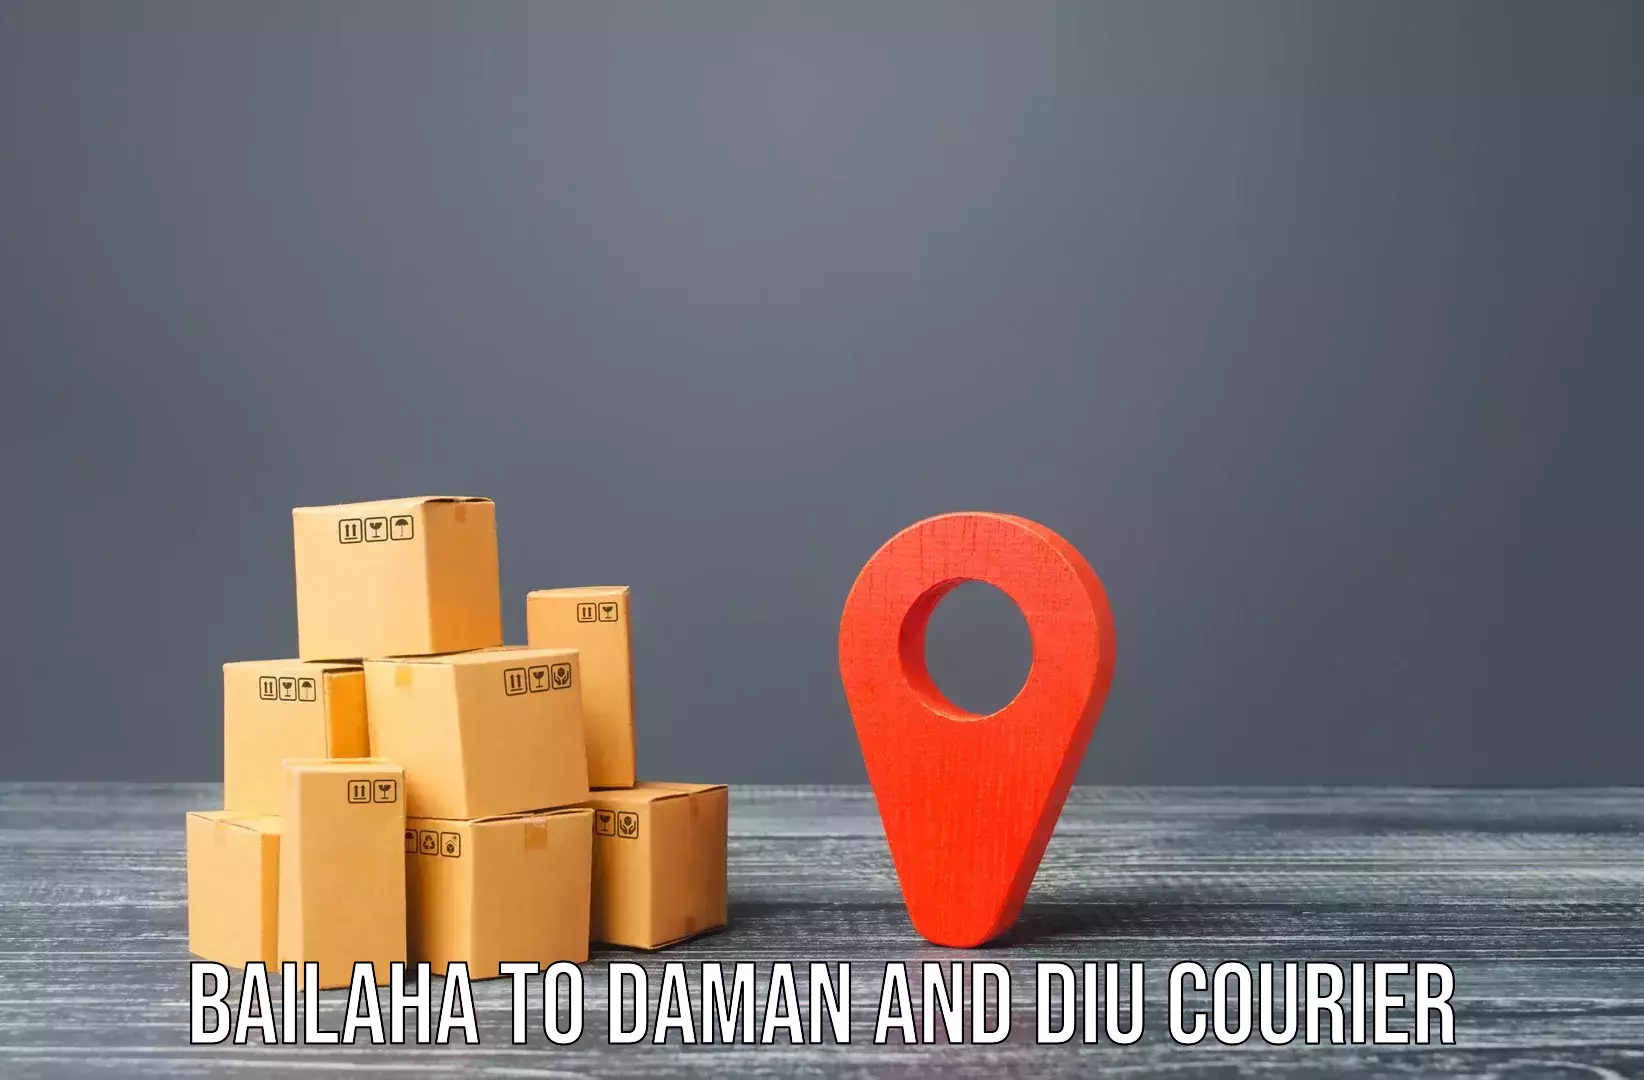 Furniture transport professionals Bailaha to Daman and Diu